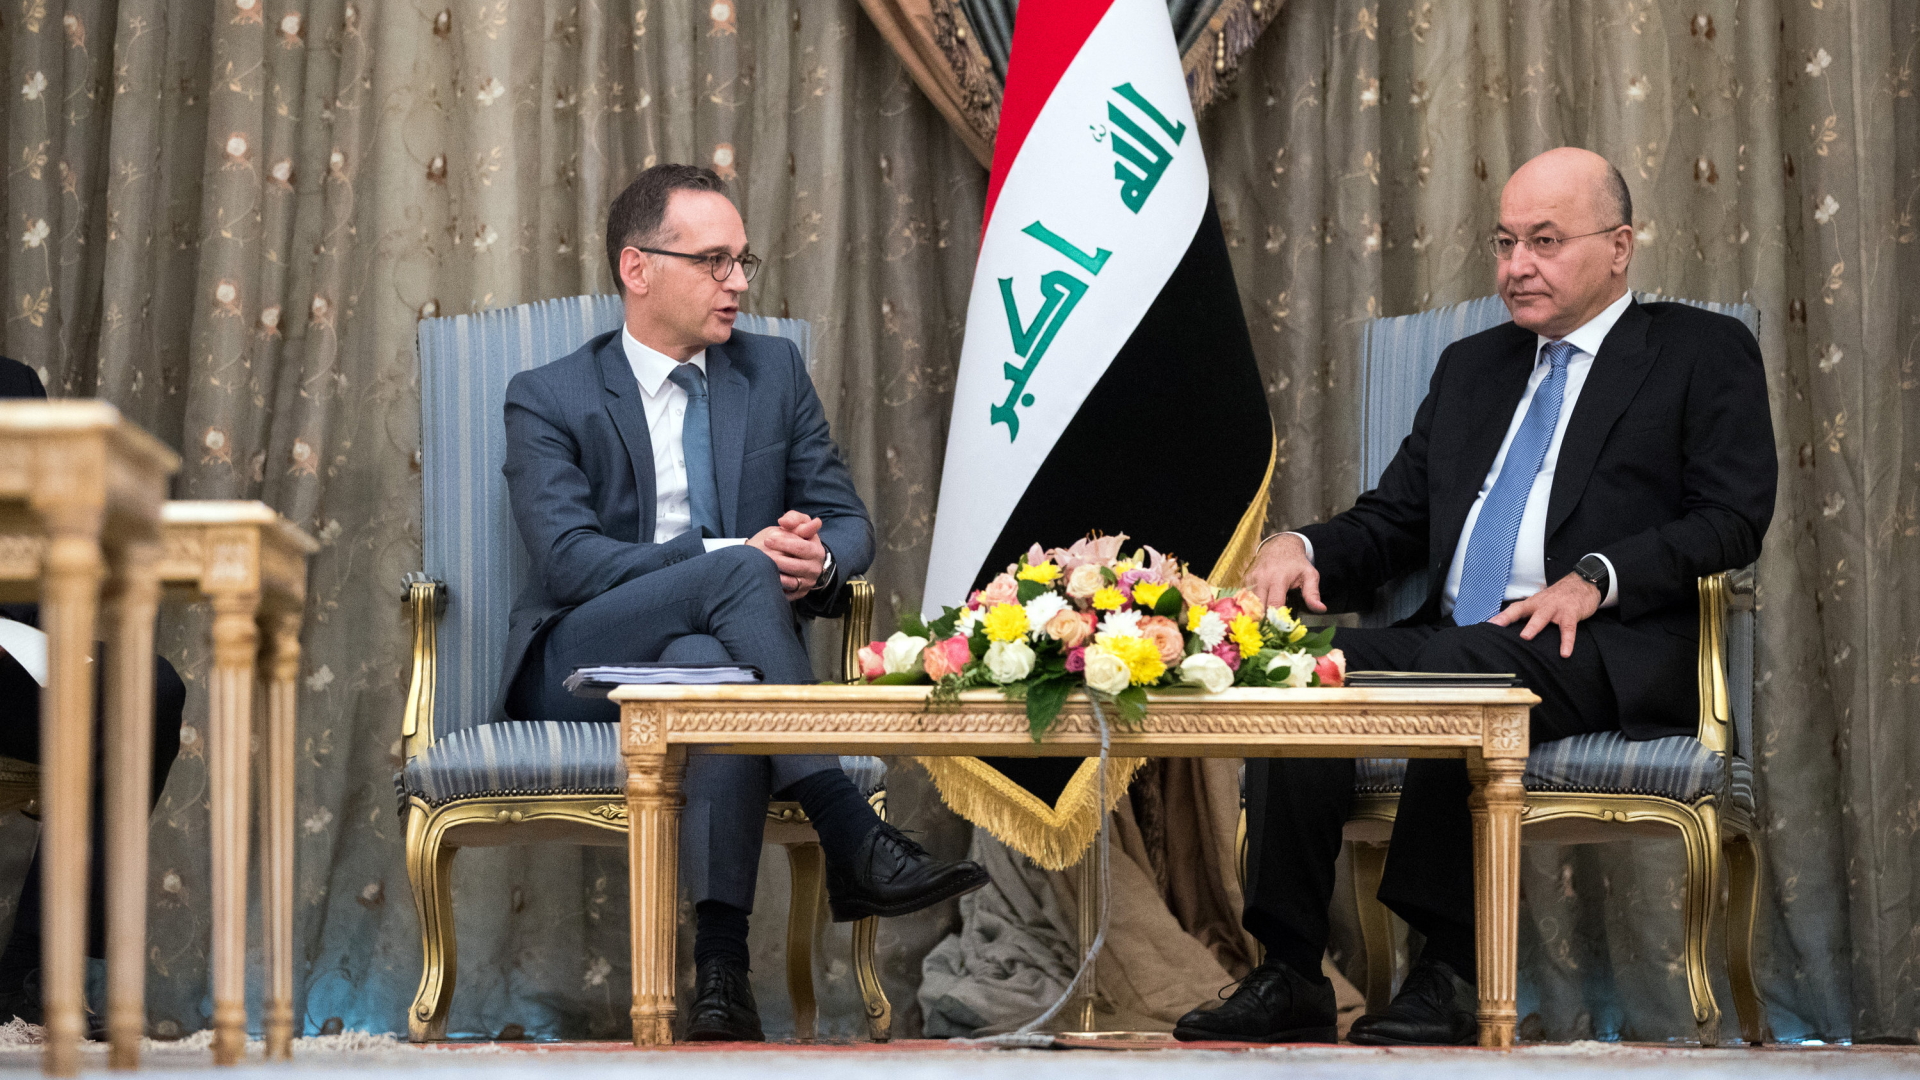 Außenminister Maas besuchte auf seiner Irak-Reise seinen Amtskollegen al-Hakim. | Bildquelle: dpa